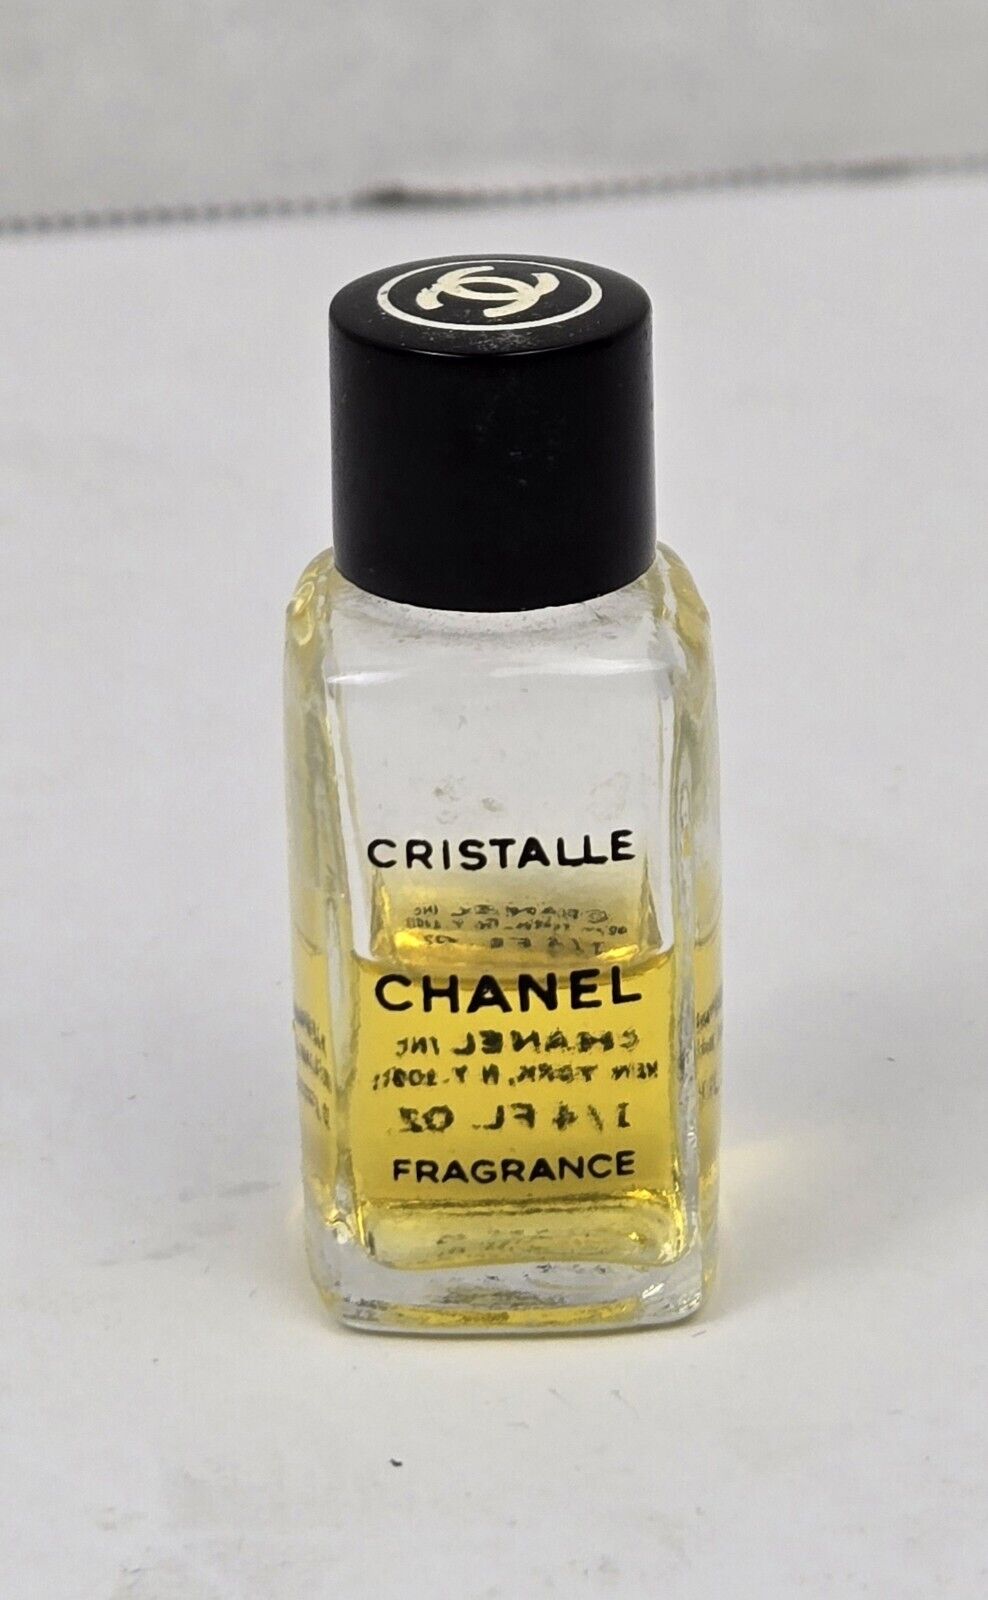 1970/80s Vintage 0.25 oz mini Fragrance Chanel Cristalle (earlier EDT) 50% Full